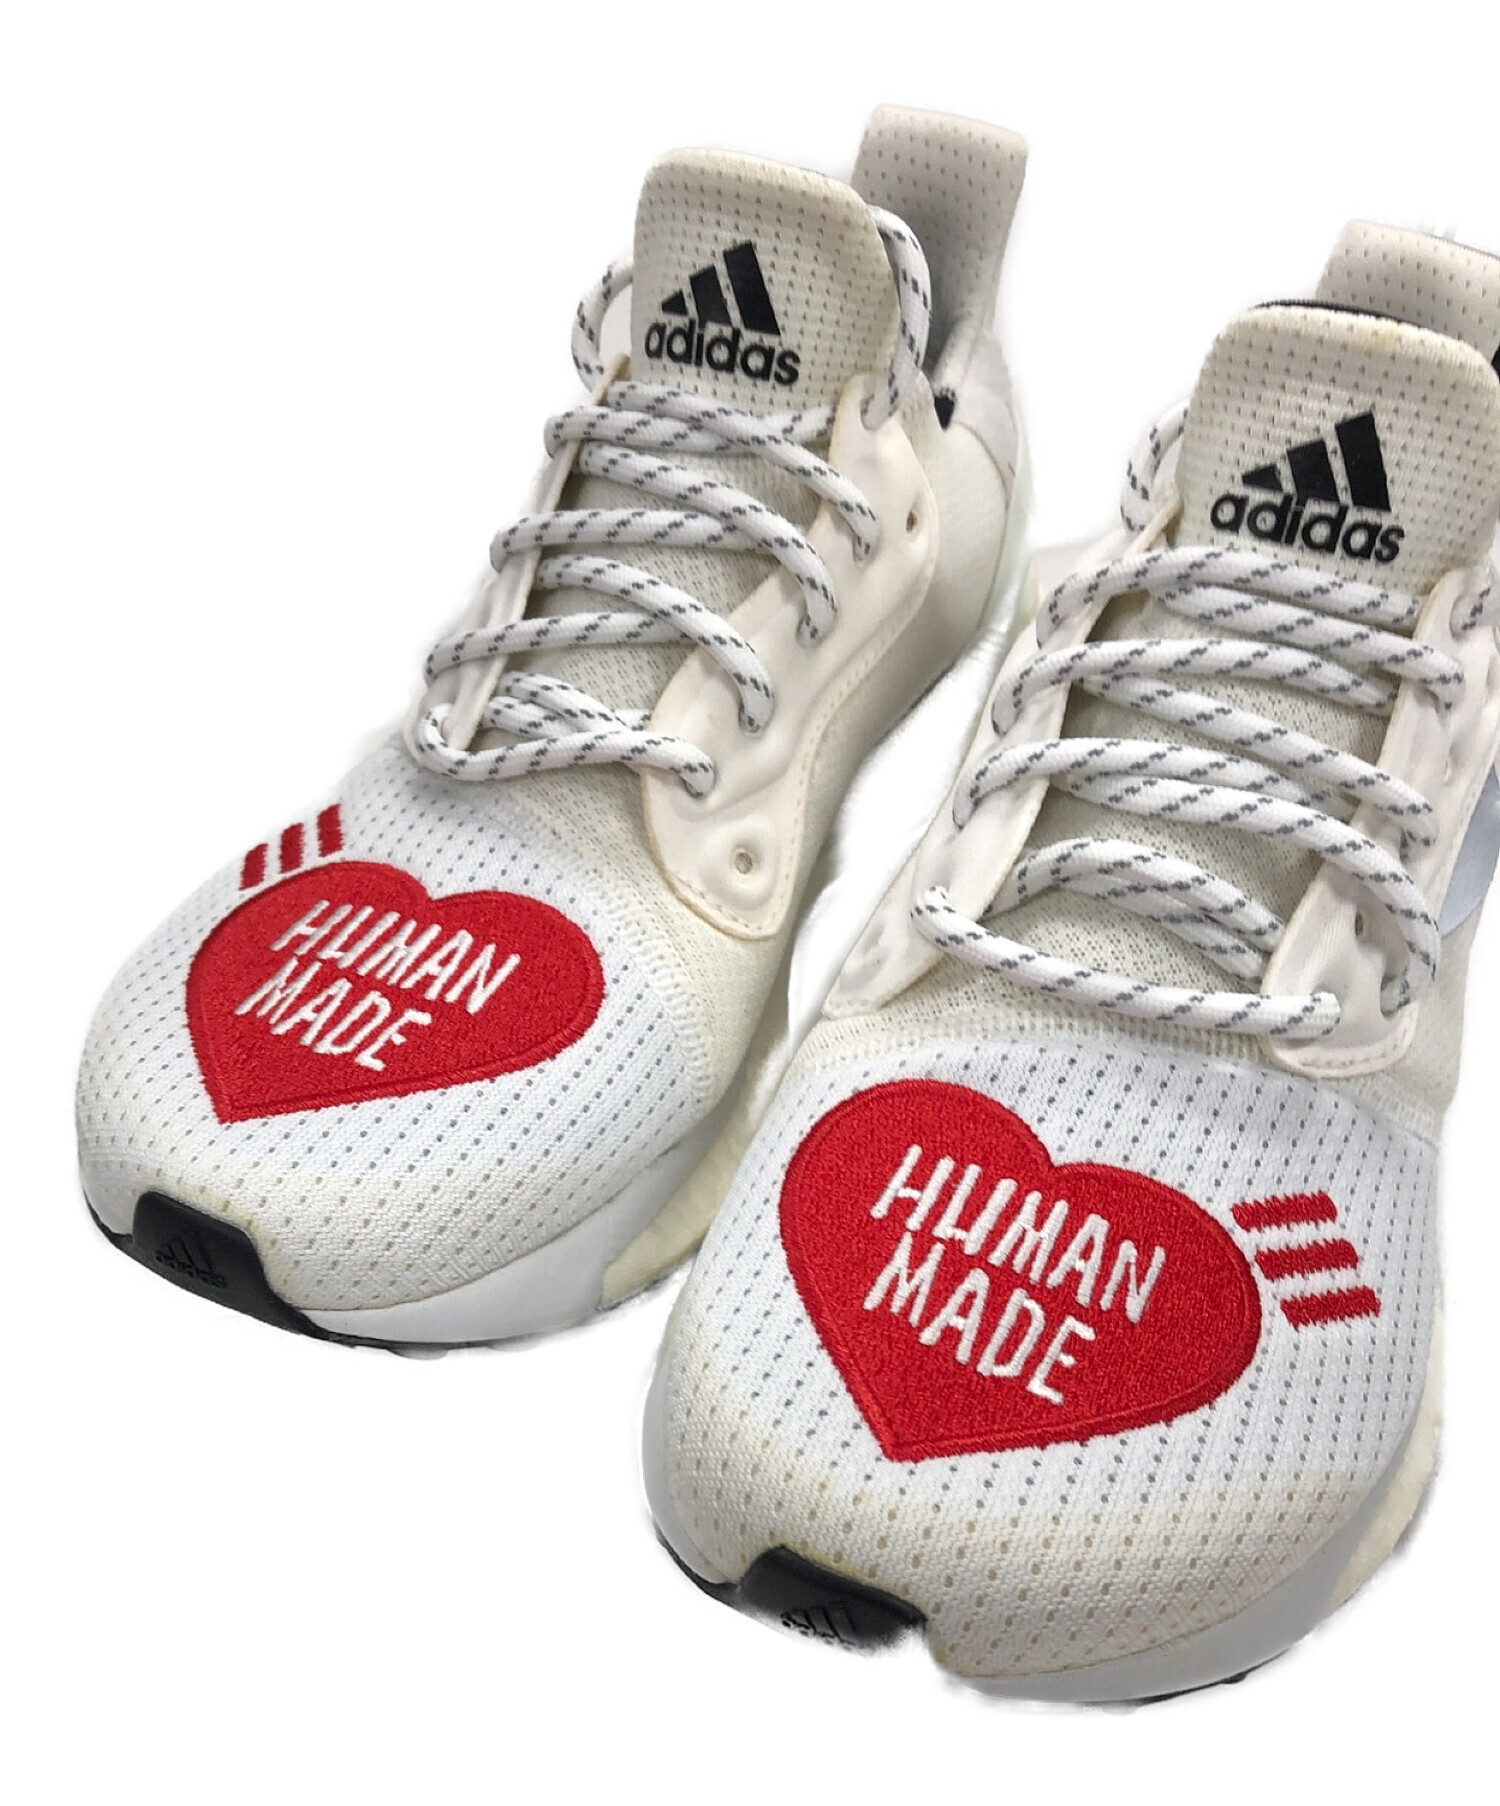 adidas (アディダス) HUMAN MADE (ヒューマンメイド) スニーカー ホワイト サイズ:24cm